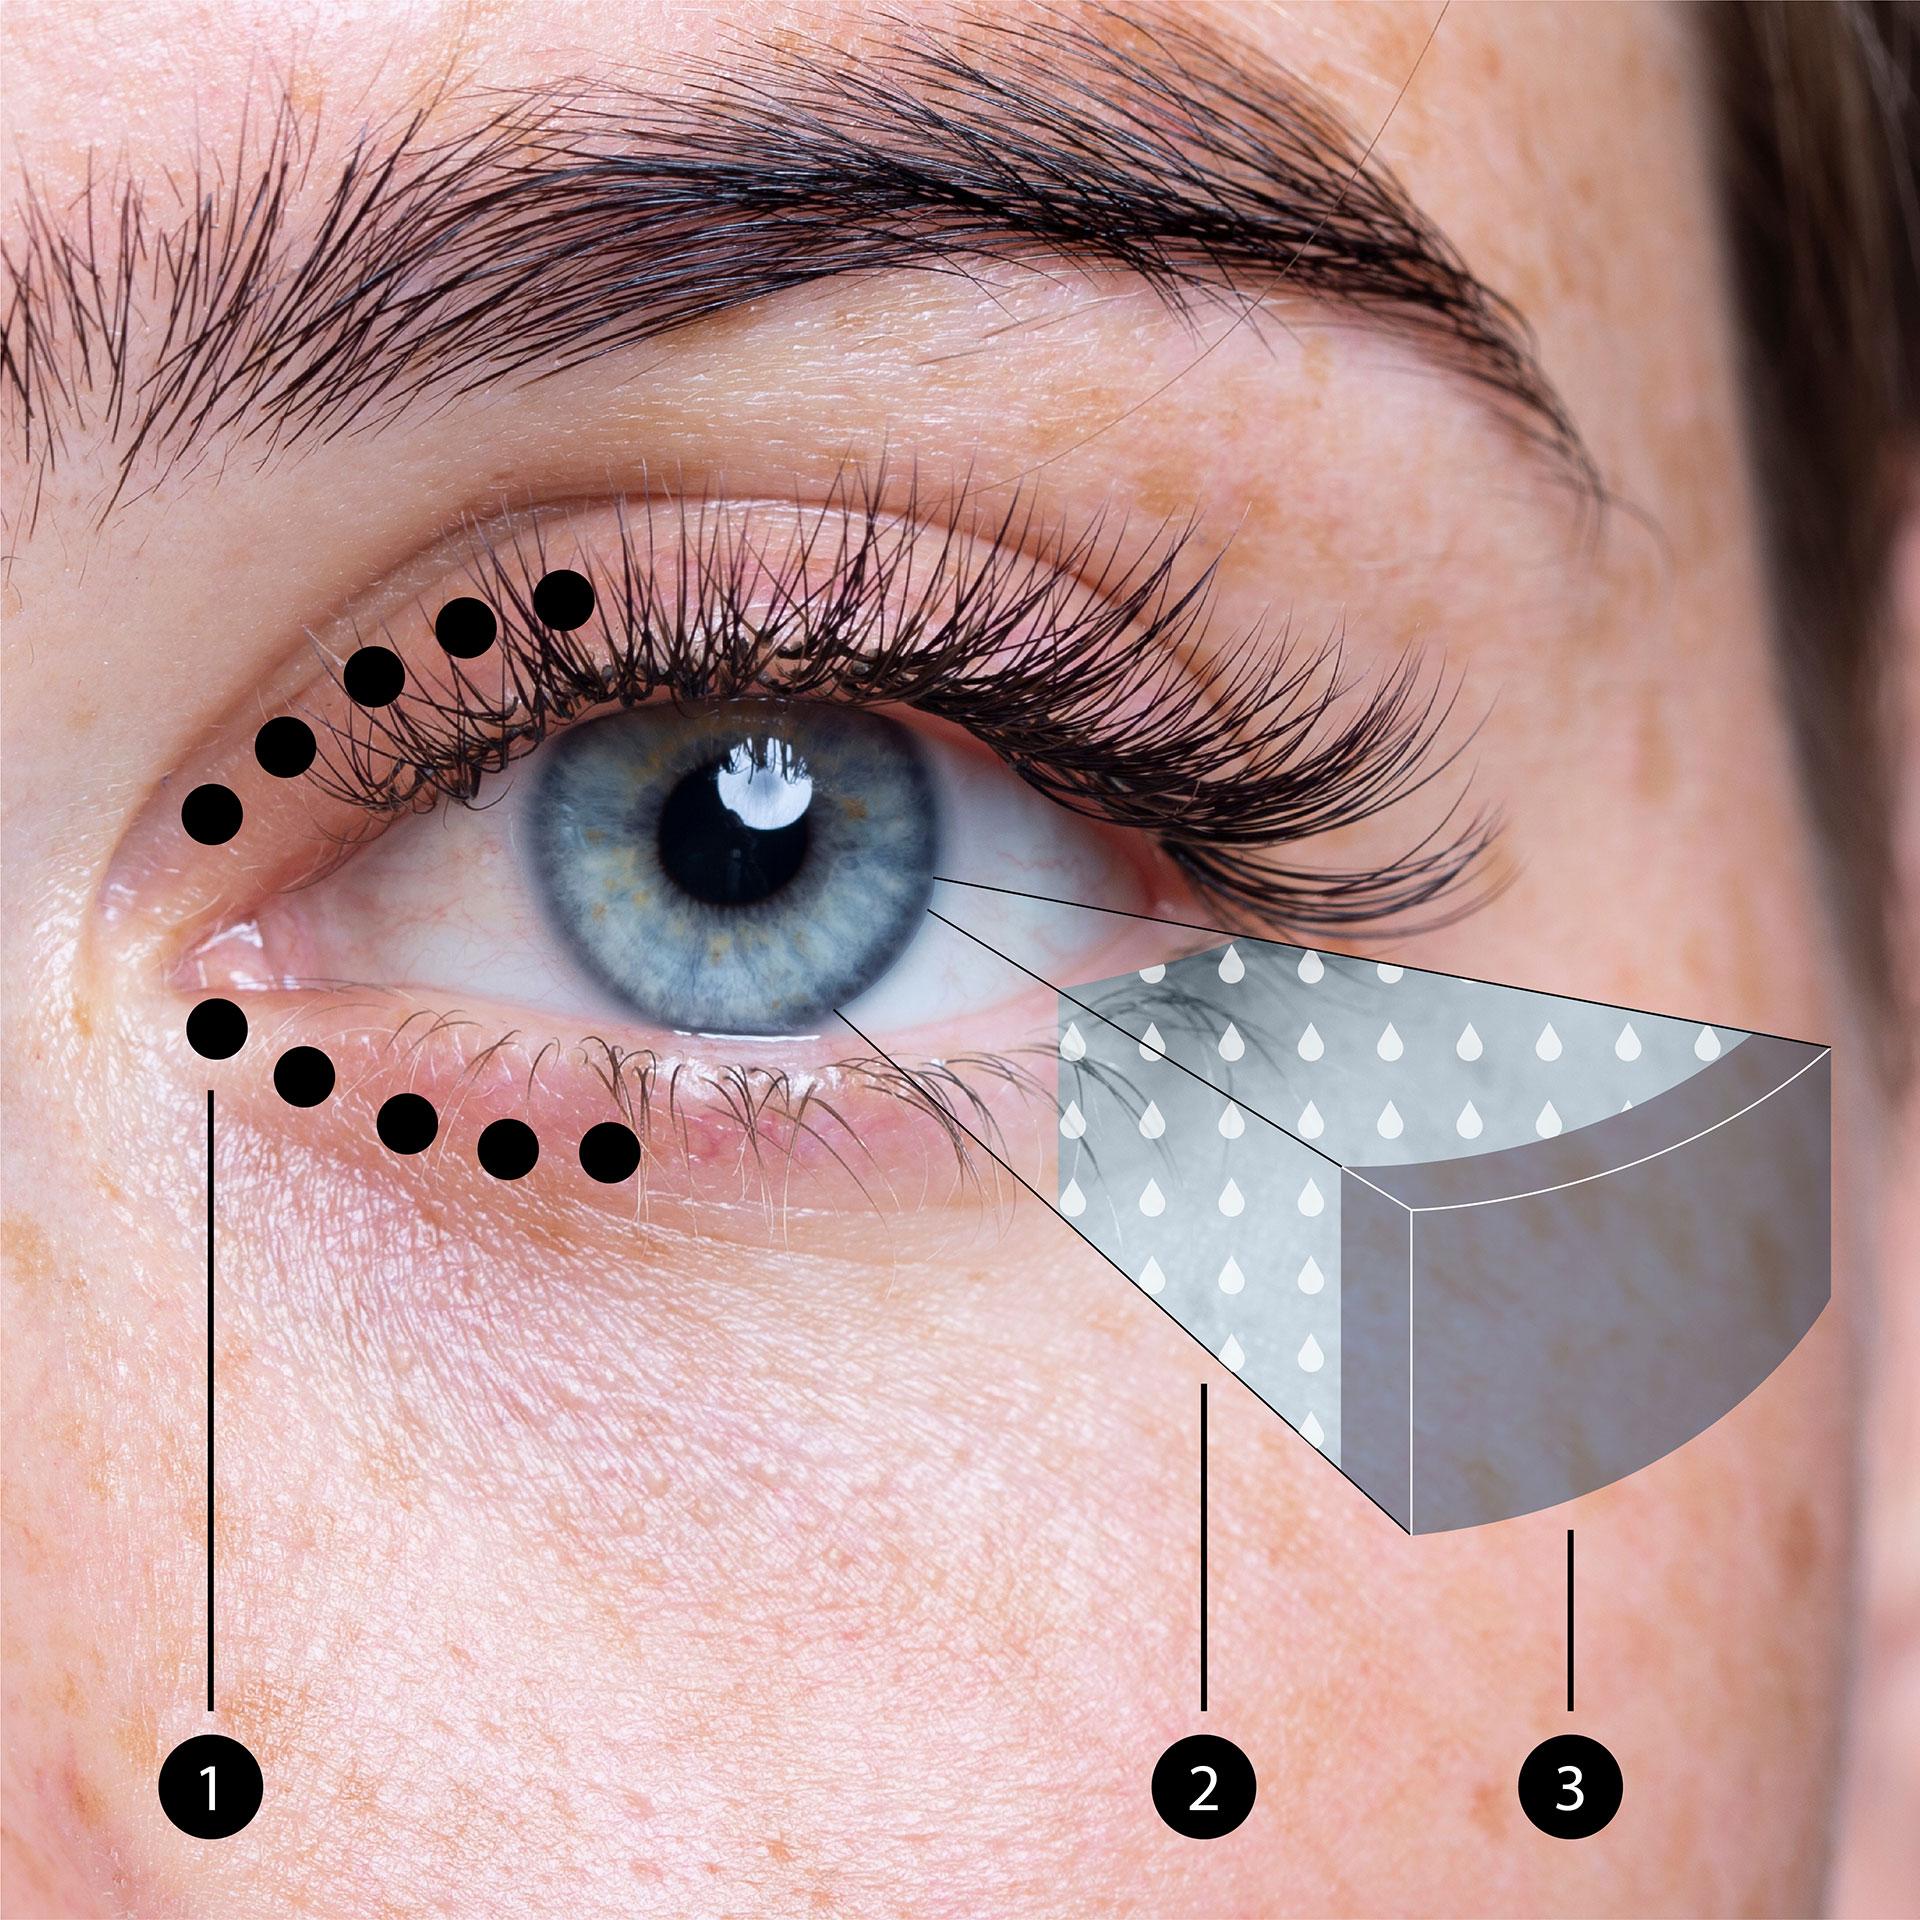 Imagem de um olho, que mostra a posição das glândulas meibomianas nas pálpebras e a camada de meibum sobre o fluido lacrimal do olho.